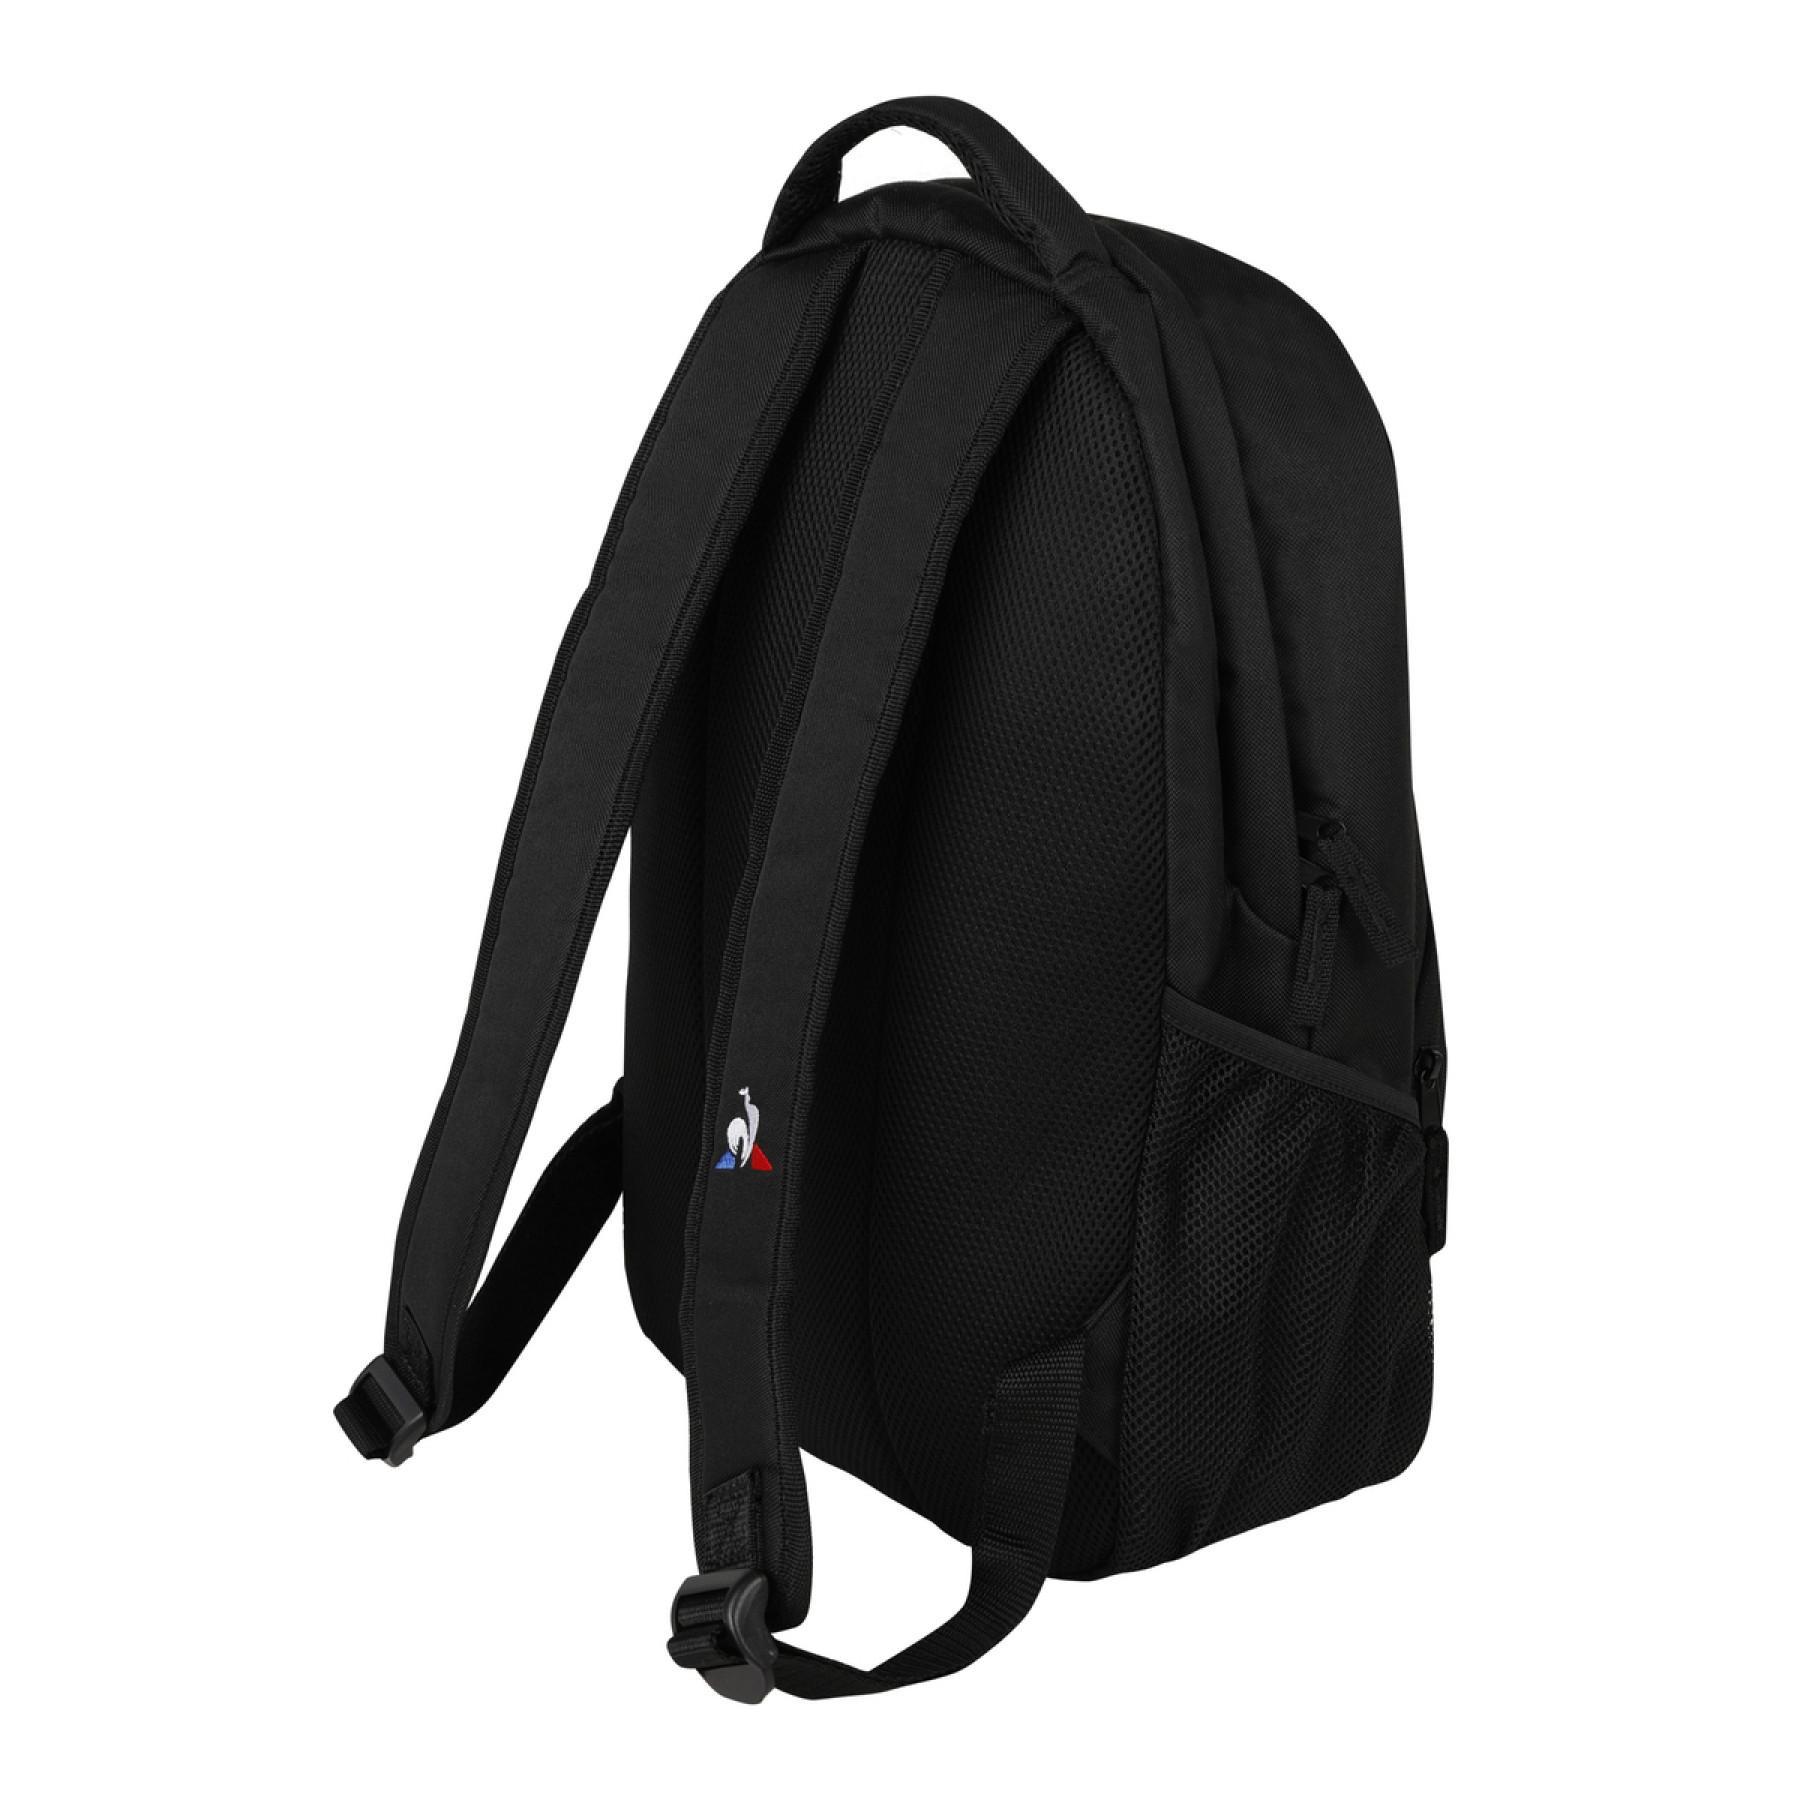 Backpack as saint-etienne